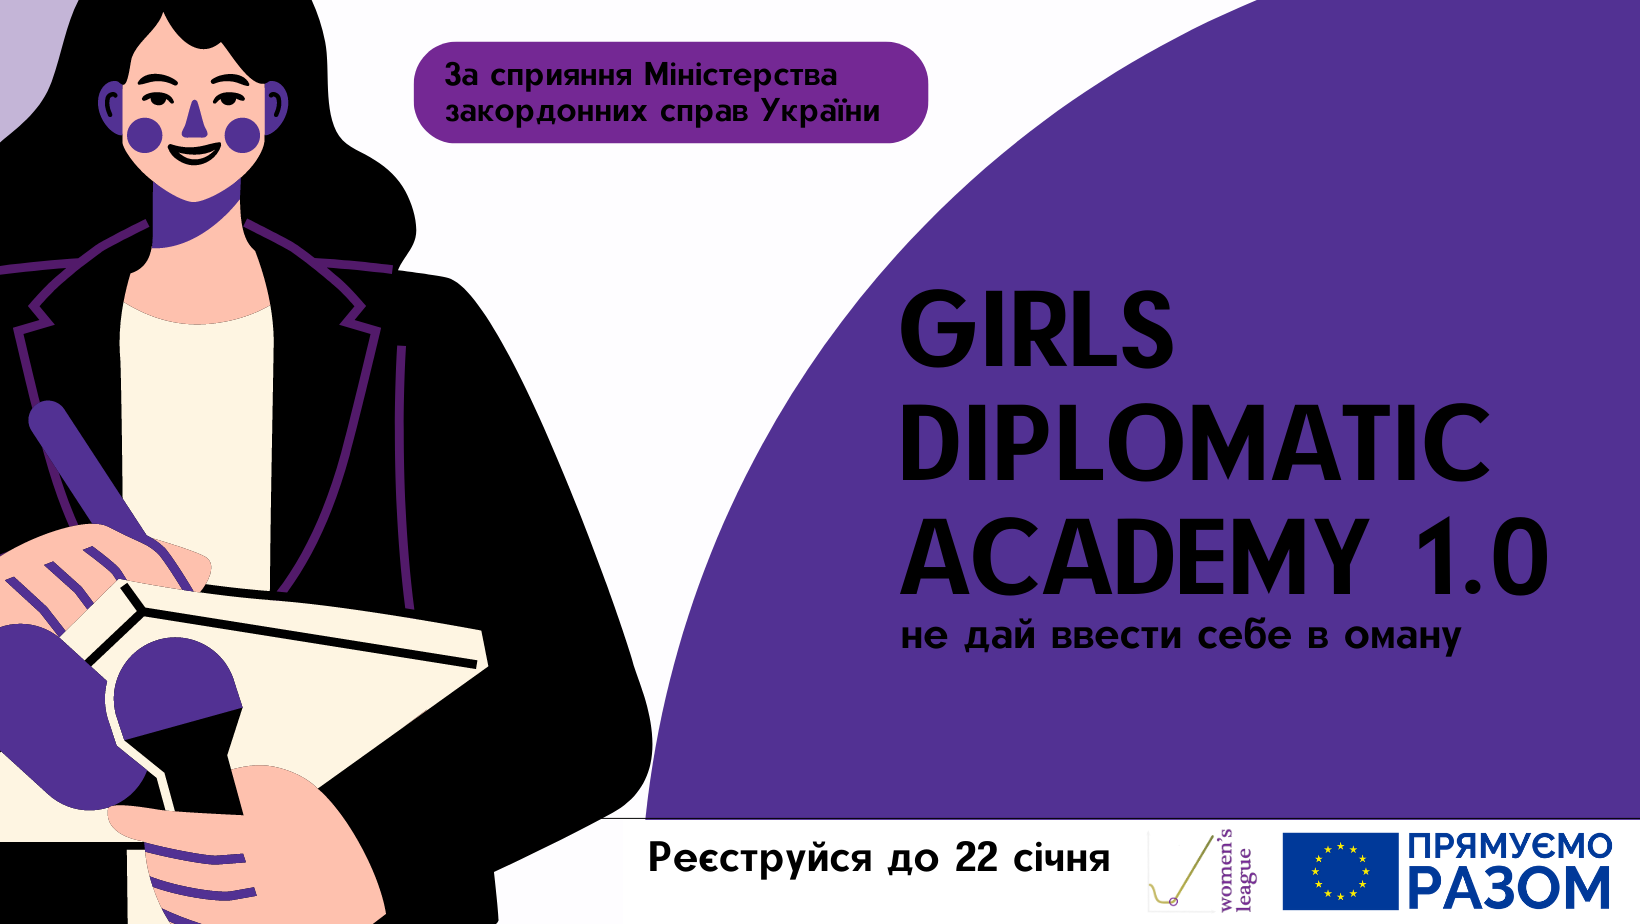 Академія дипломатії для дівчат 1.0